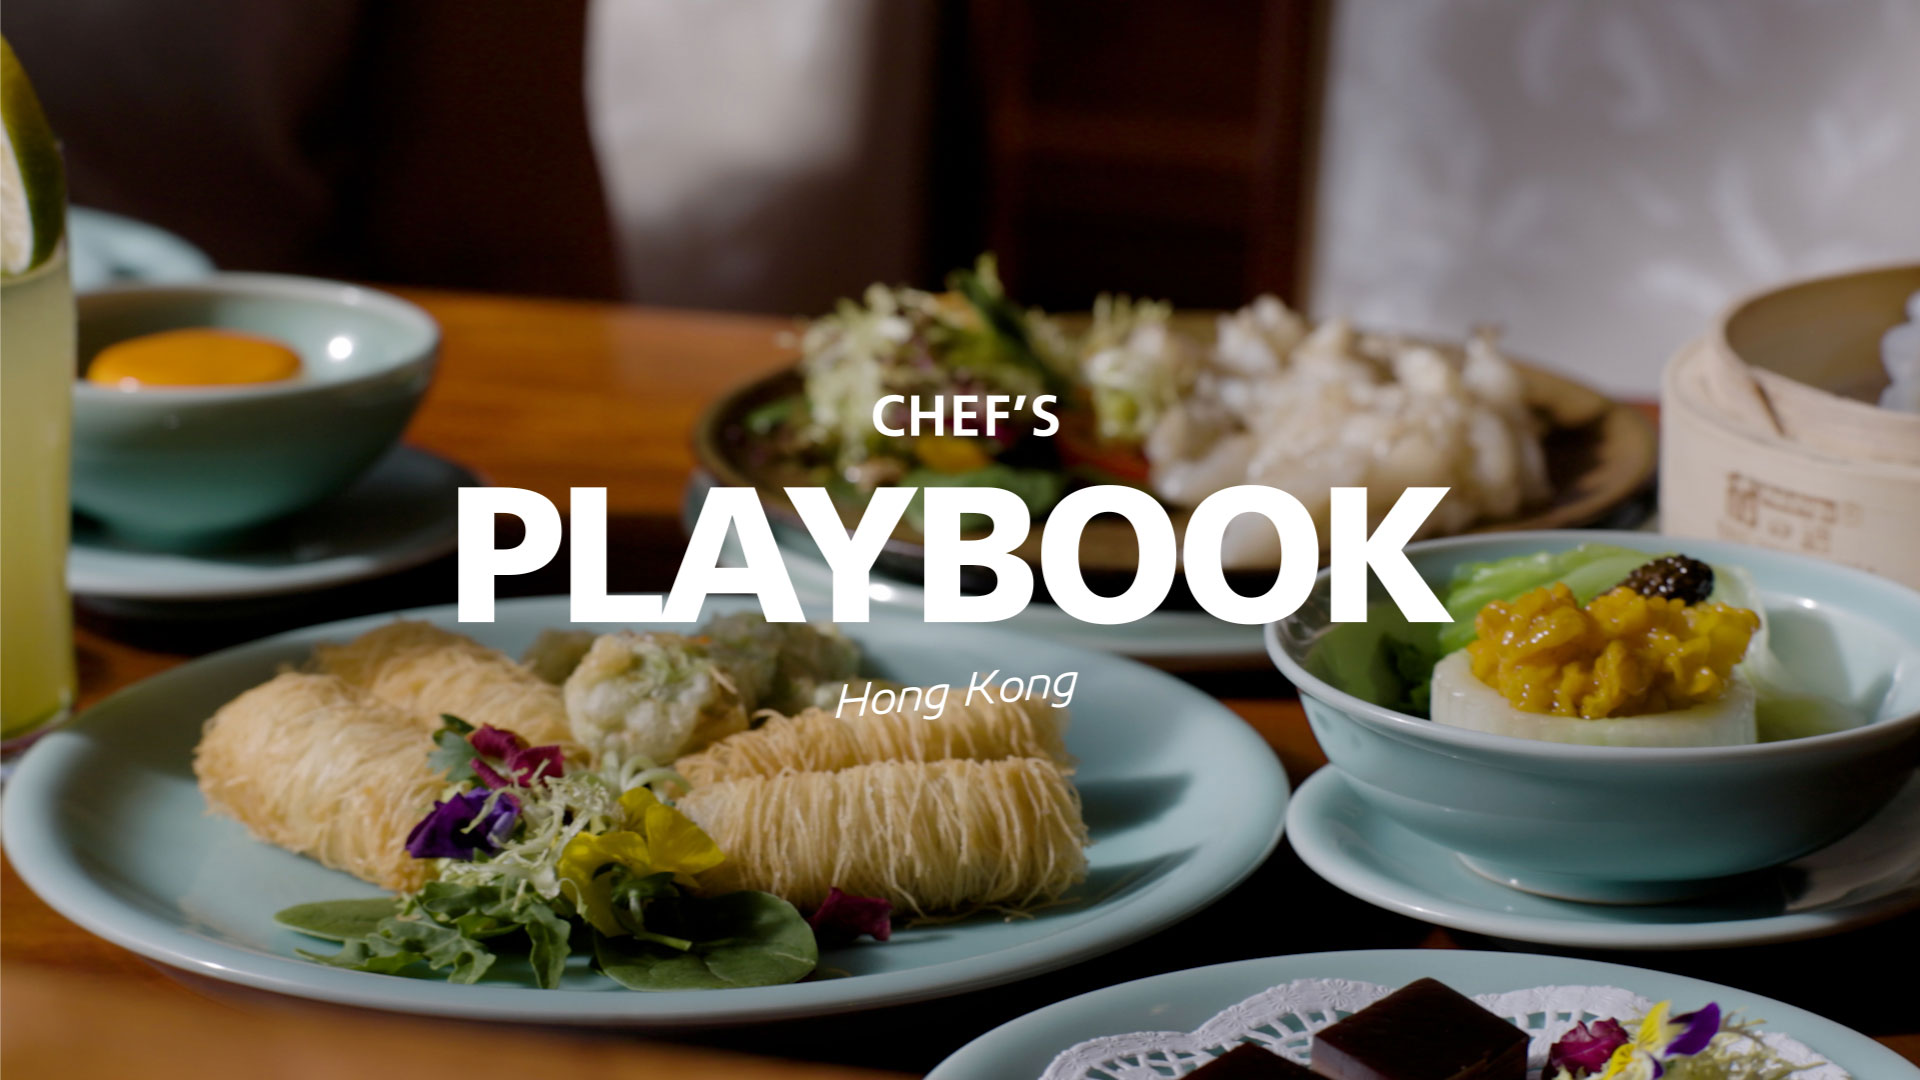 Hong Kong Chefs' Playbook